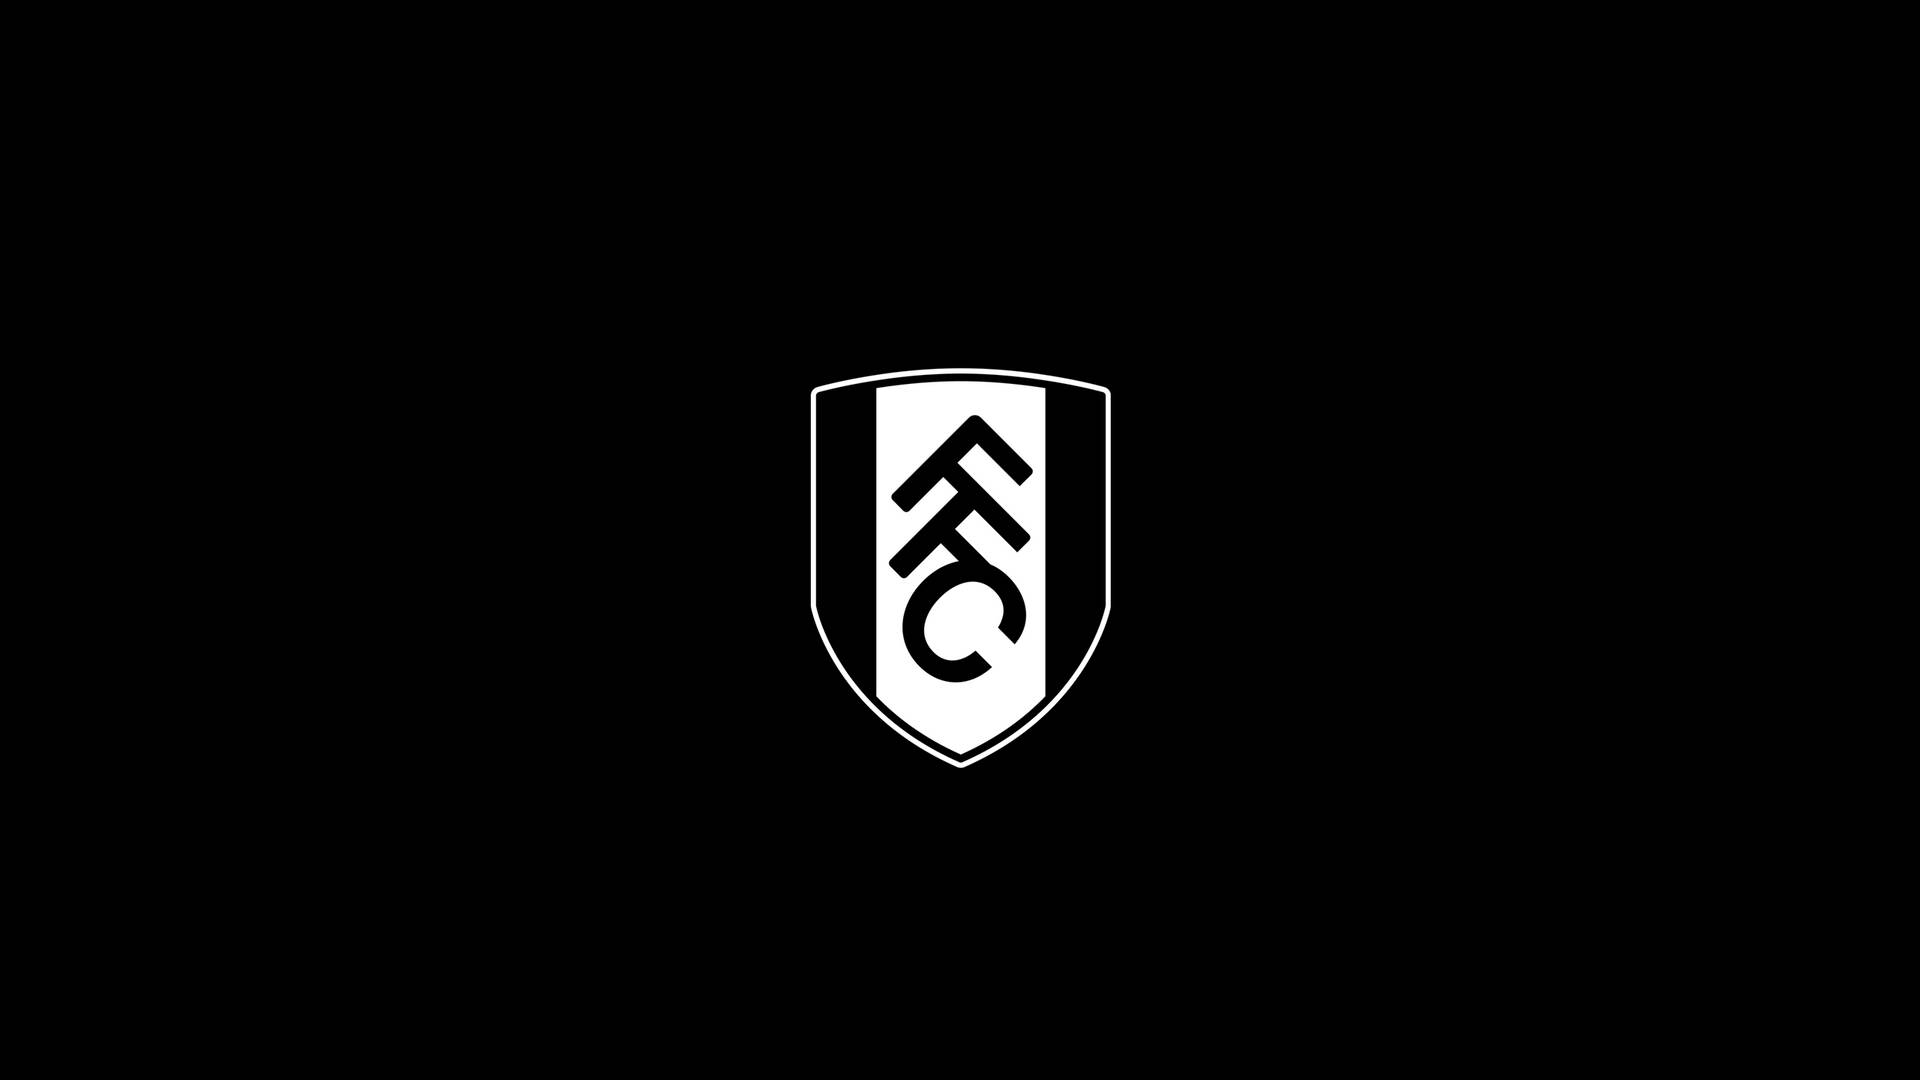 Fondode Pantalla Con El Escudo Negro Del Fulham Fc. Fondo de pantalla